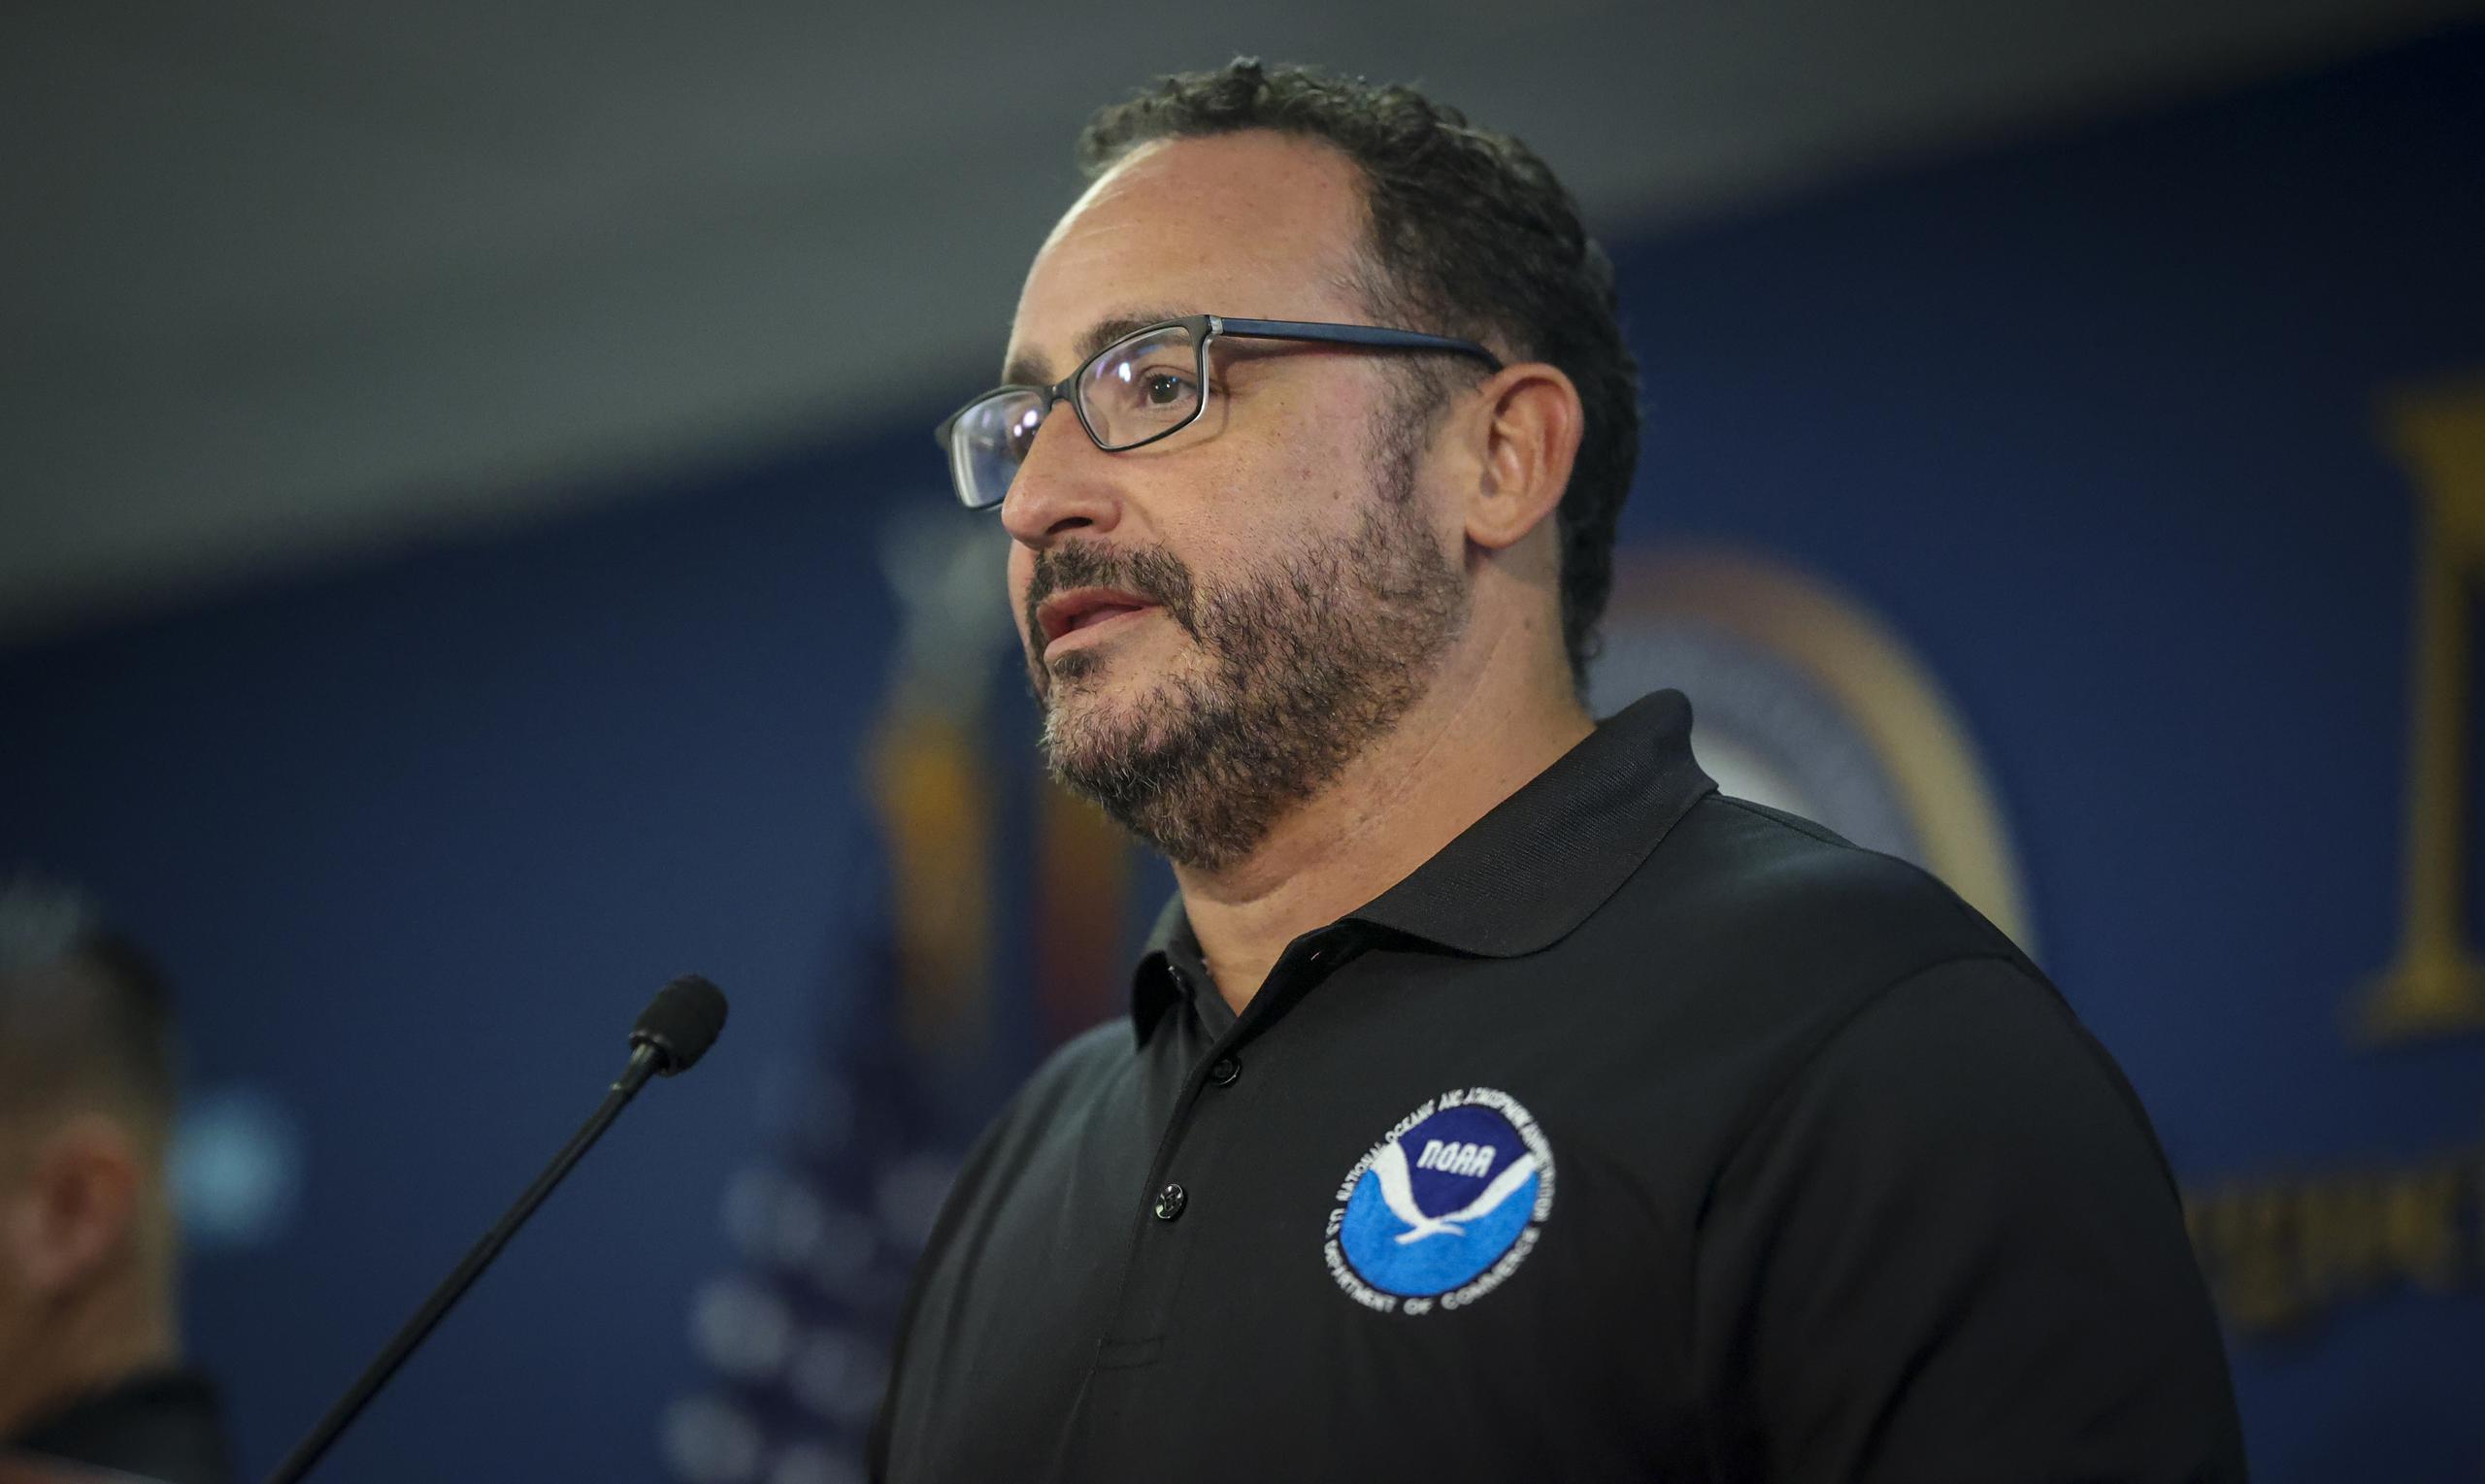 El coordinador de avisos del Servicio Nacional de Meteorología, Ernesto Morales, informó que será entre el domingo en la madrugada y durante ese día que se espere la mayor cercanía de la tormenta tropical Fiona en Puerto Rico.